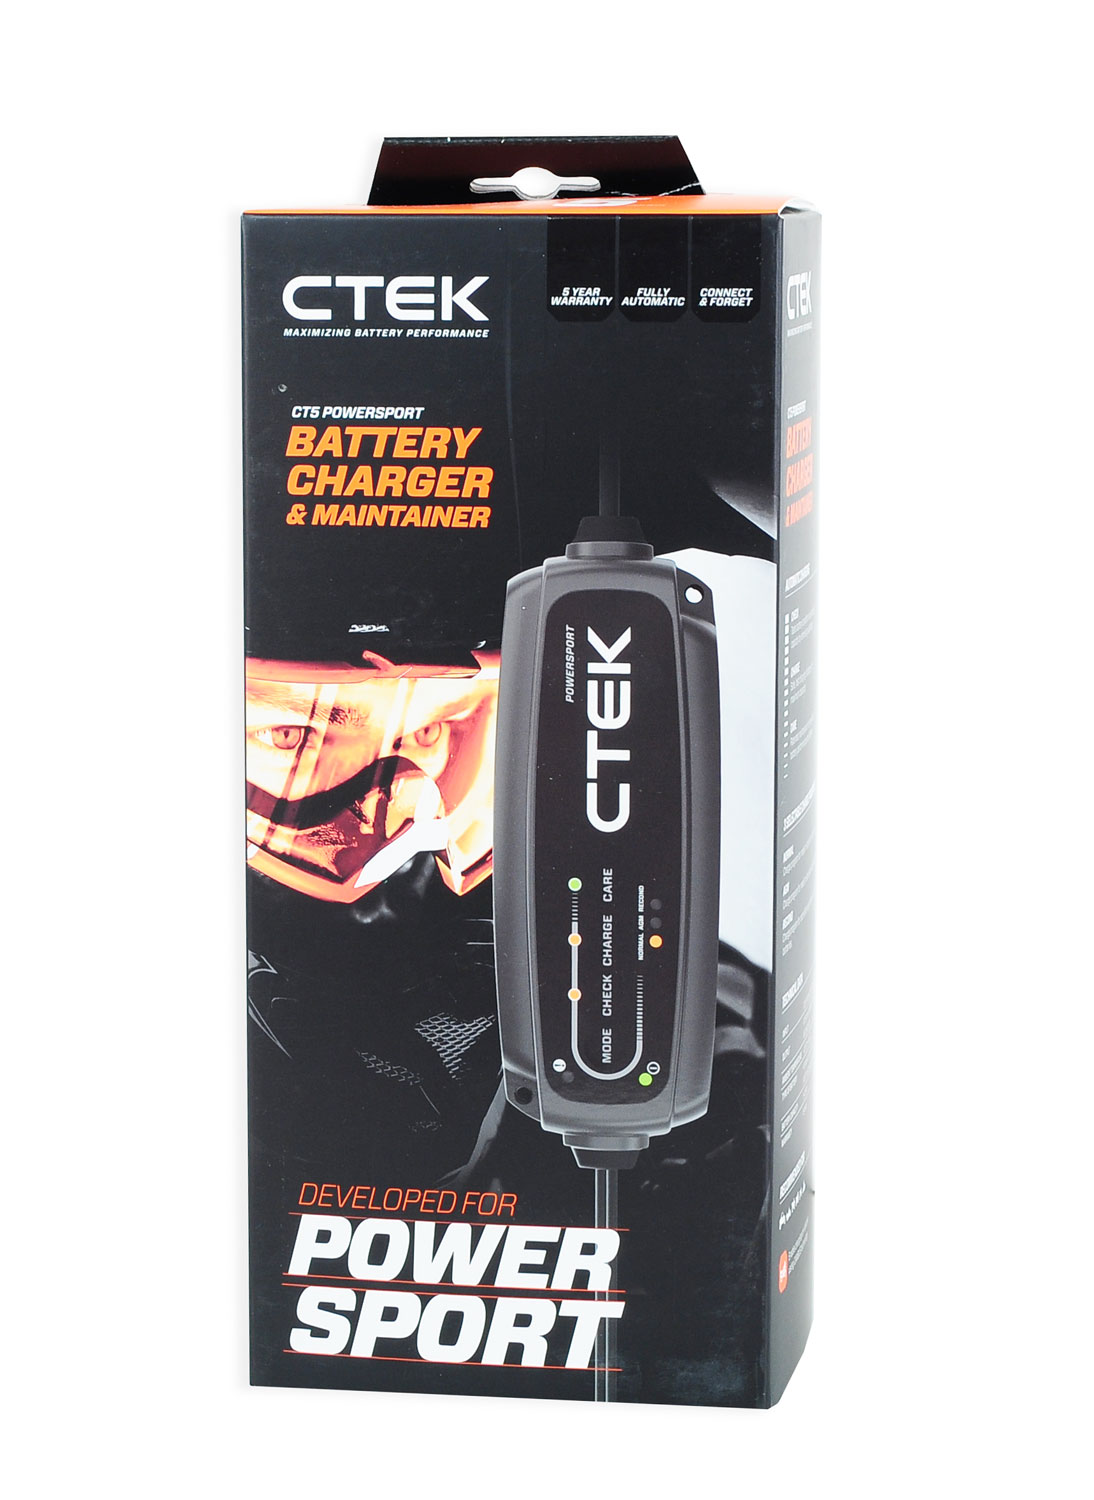 Ctek CT5 Powersport Batterieladegerät